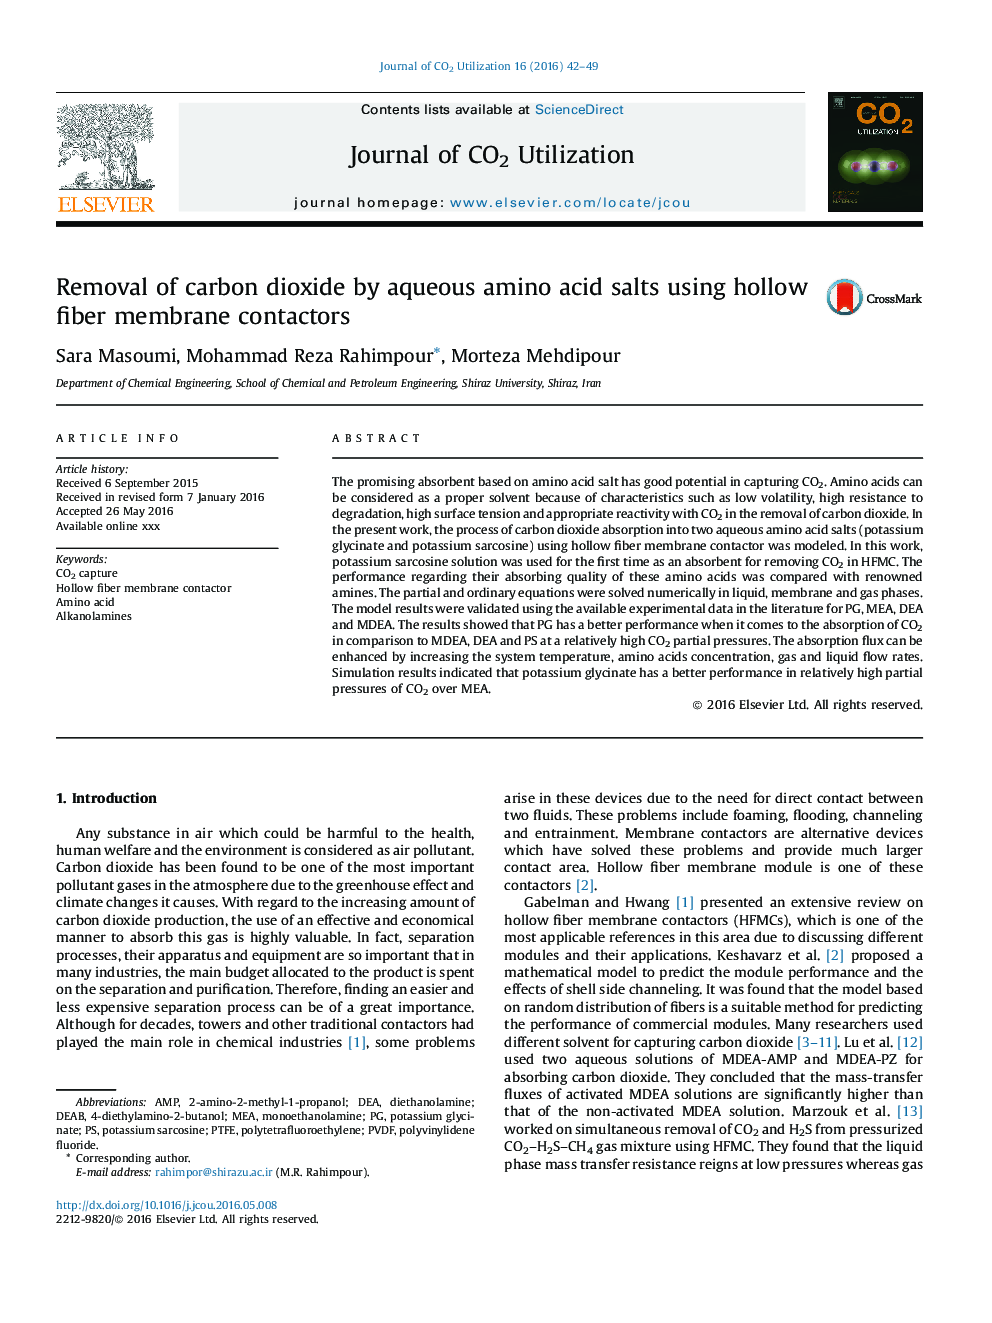 Removal of carbon dioxide by aqueous amino acid salts using hollow fiber membrane contactors